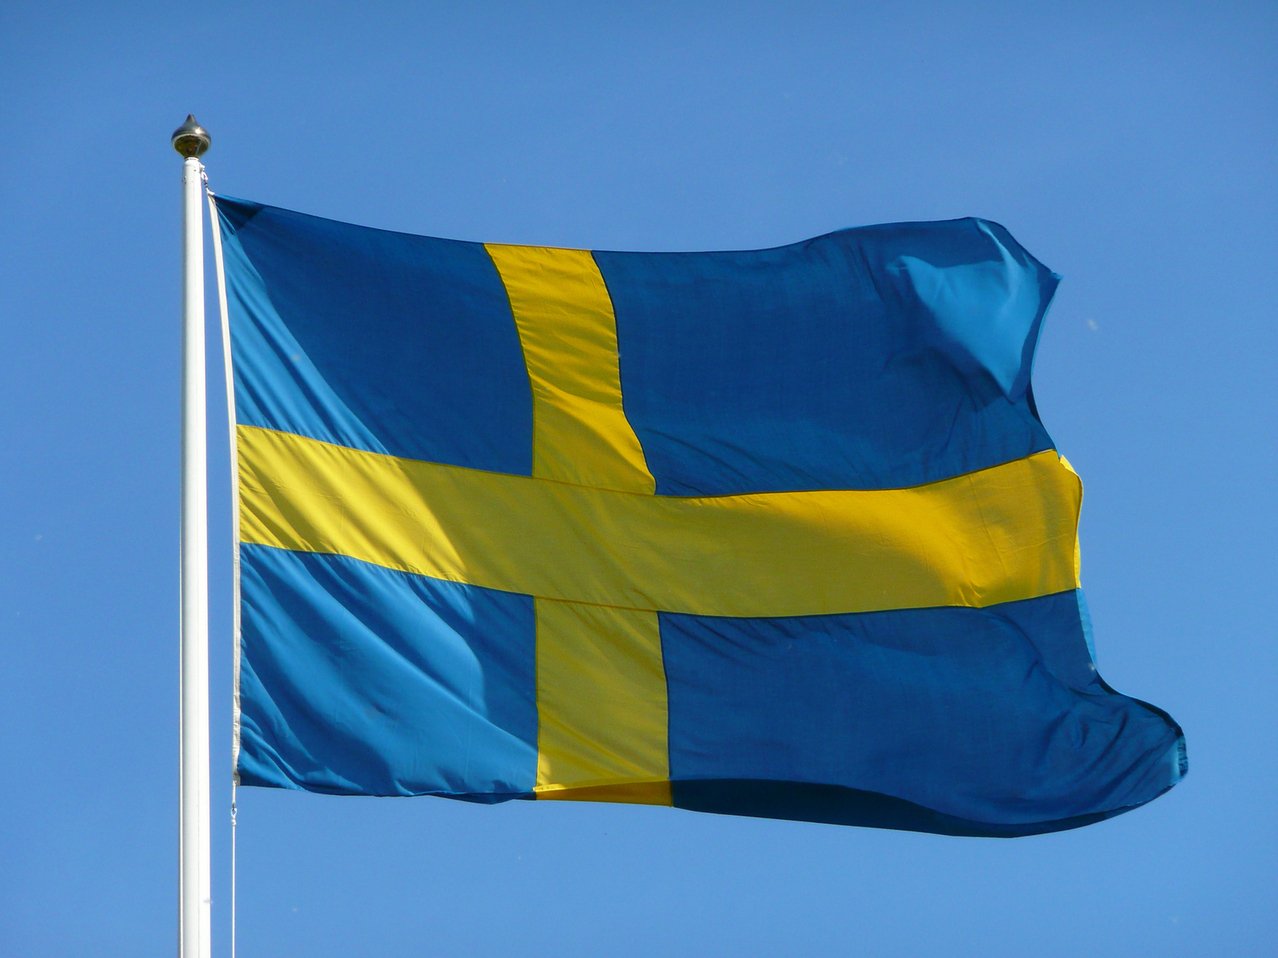 După opt luni de pandemie, Suedia ia măsuri restrictive: Se interzic adunările mai mari de opt persoane